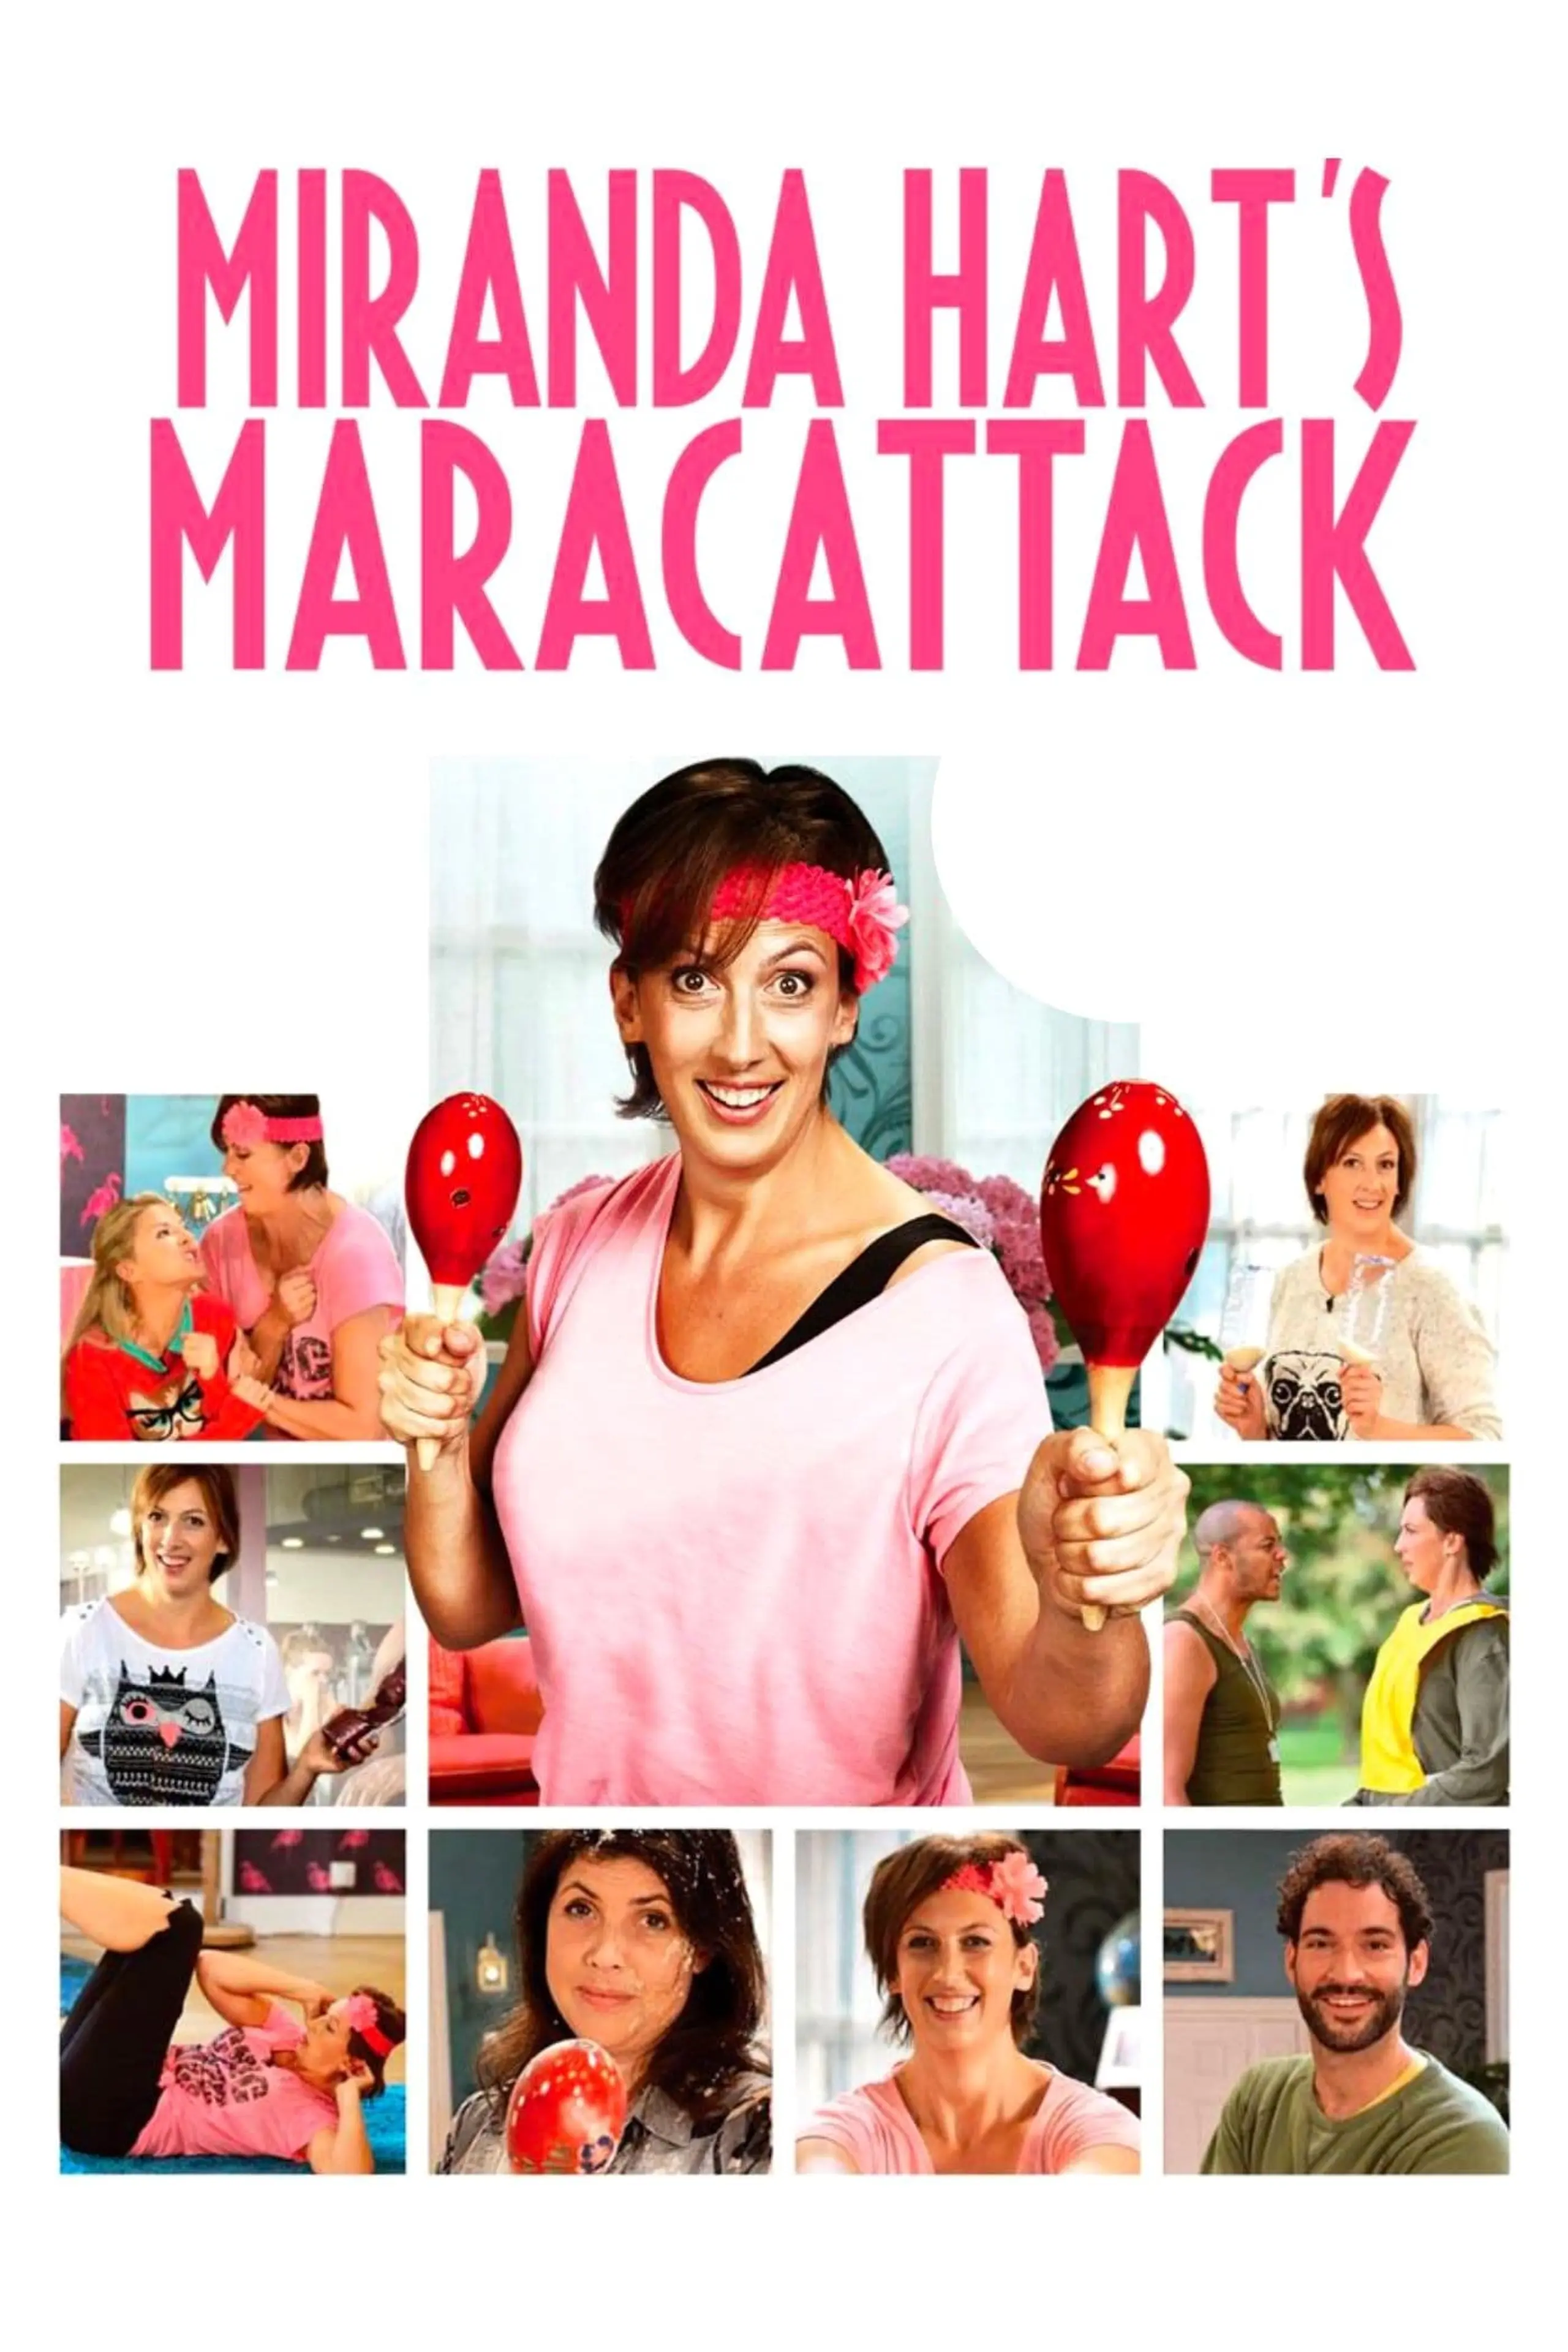 Miranda Hart’s Maracattack